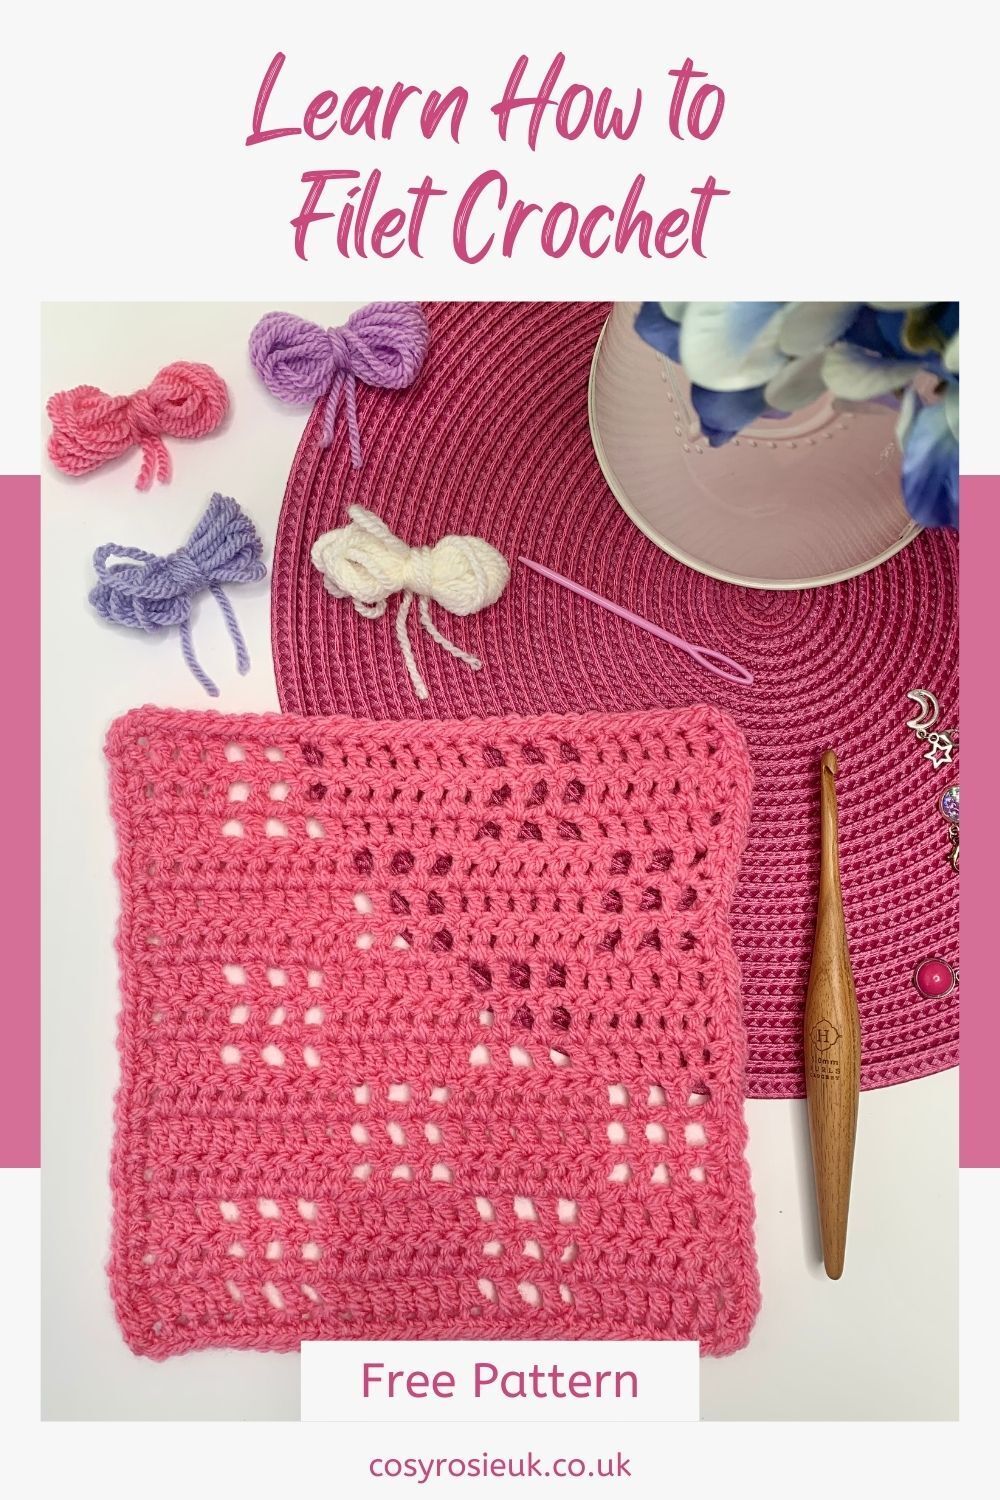 Learn how to filet crochet